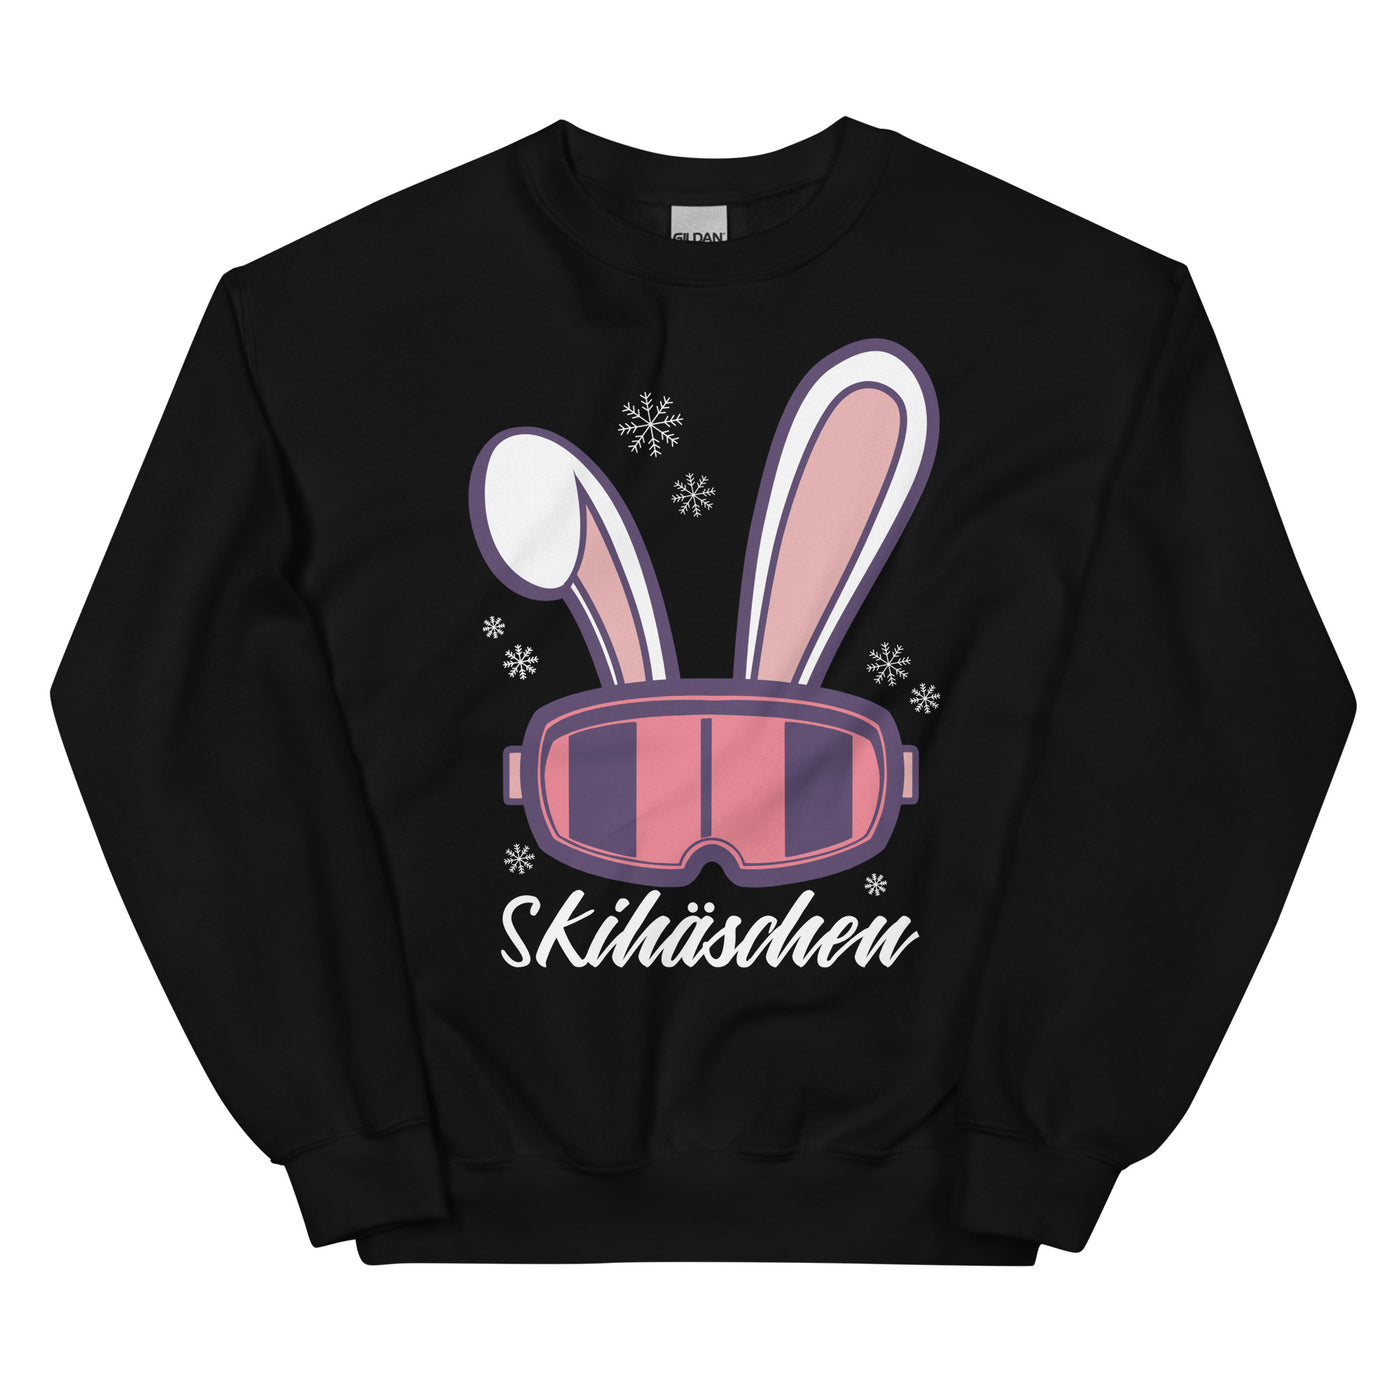 Skihäschen - (S.K) - Sweatshirt (Unisex) klettern Schwarz